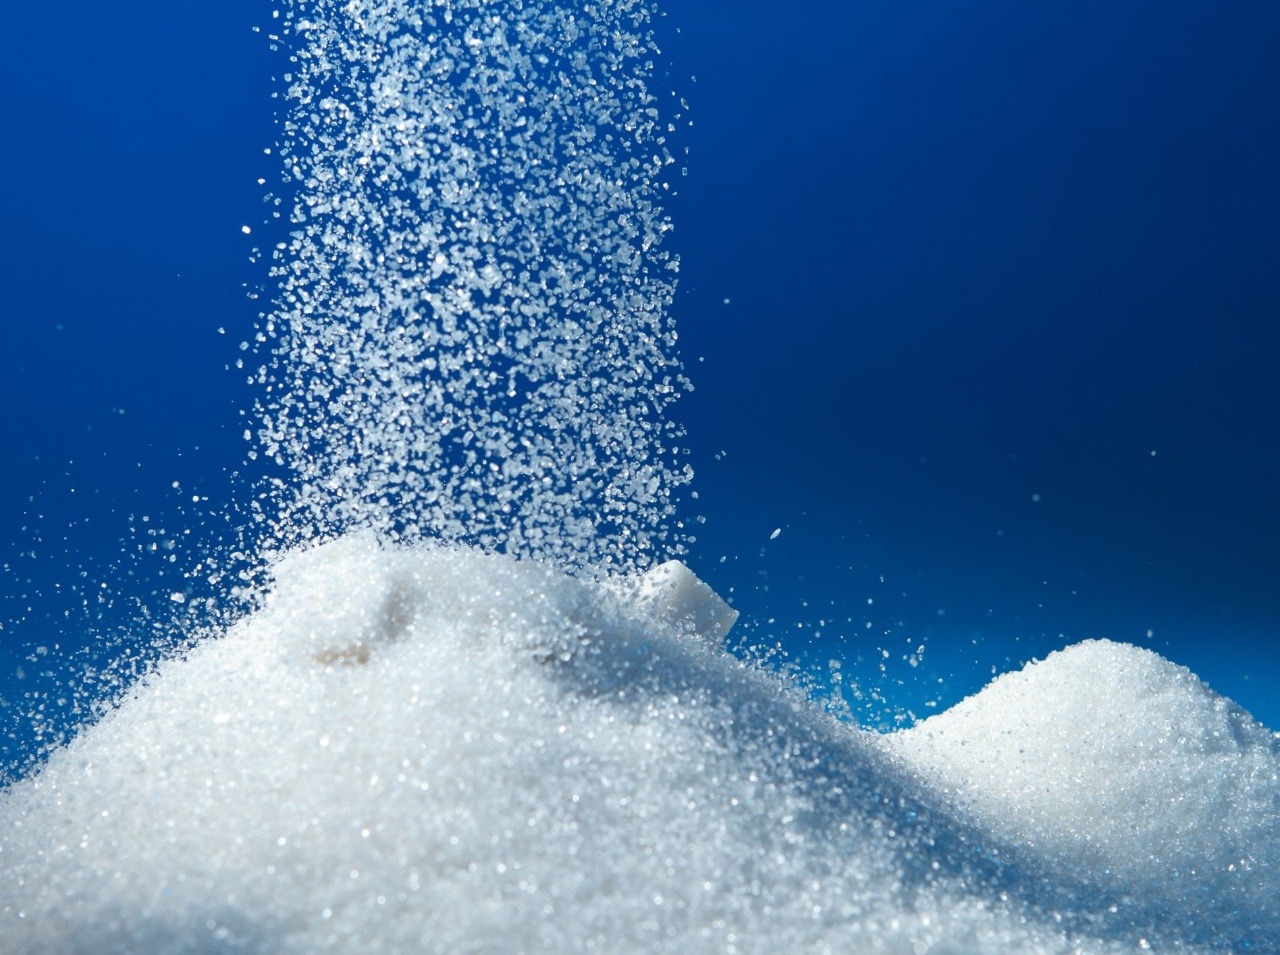 Biely cukor vám môže aj pomôcť, stačí vedieť, ako ho použiť!